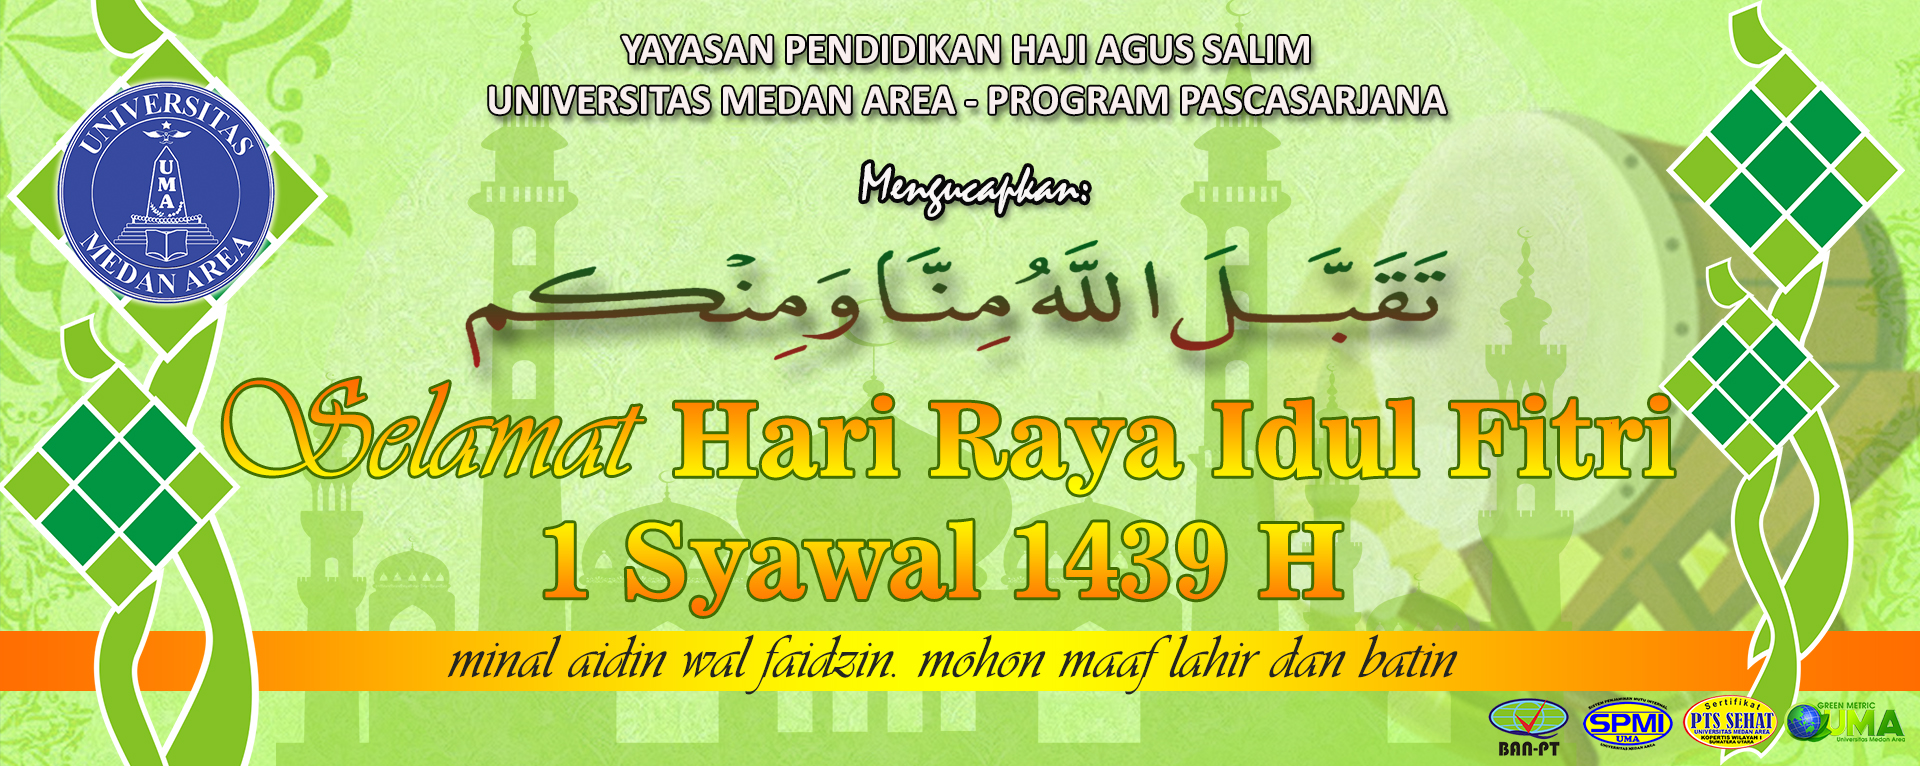 Selamat Hari Raya Idul Fitri 1439 H Pascasarjana Universitas Medan